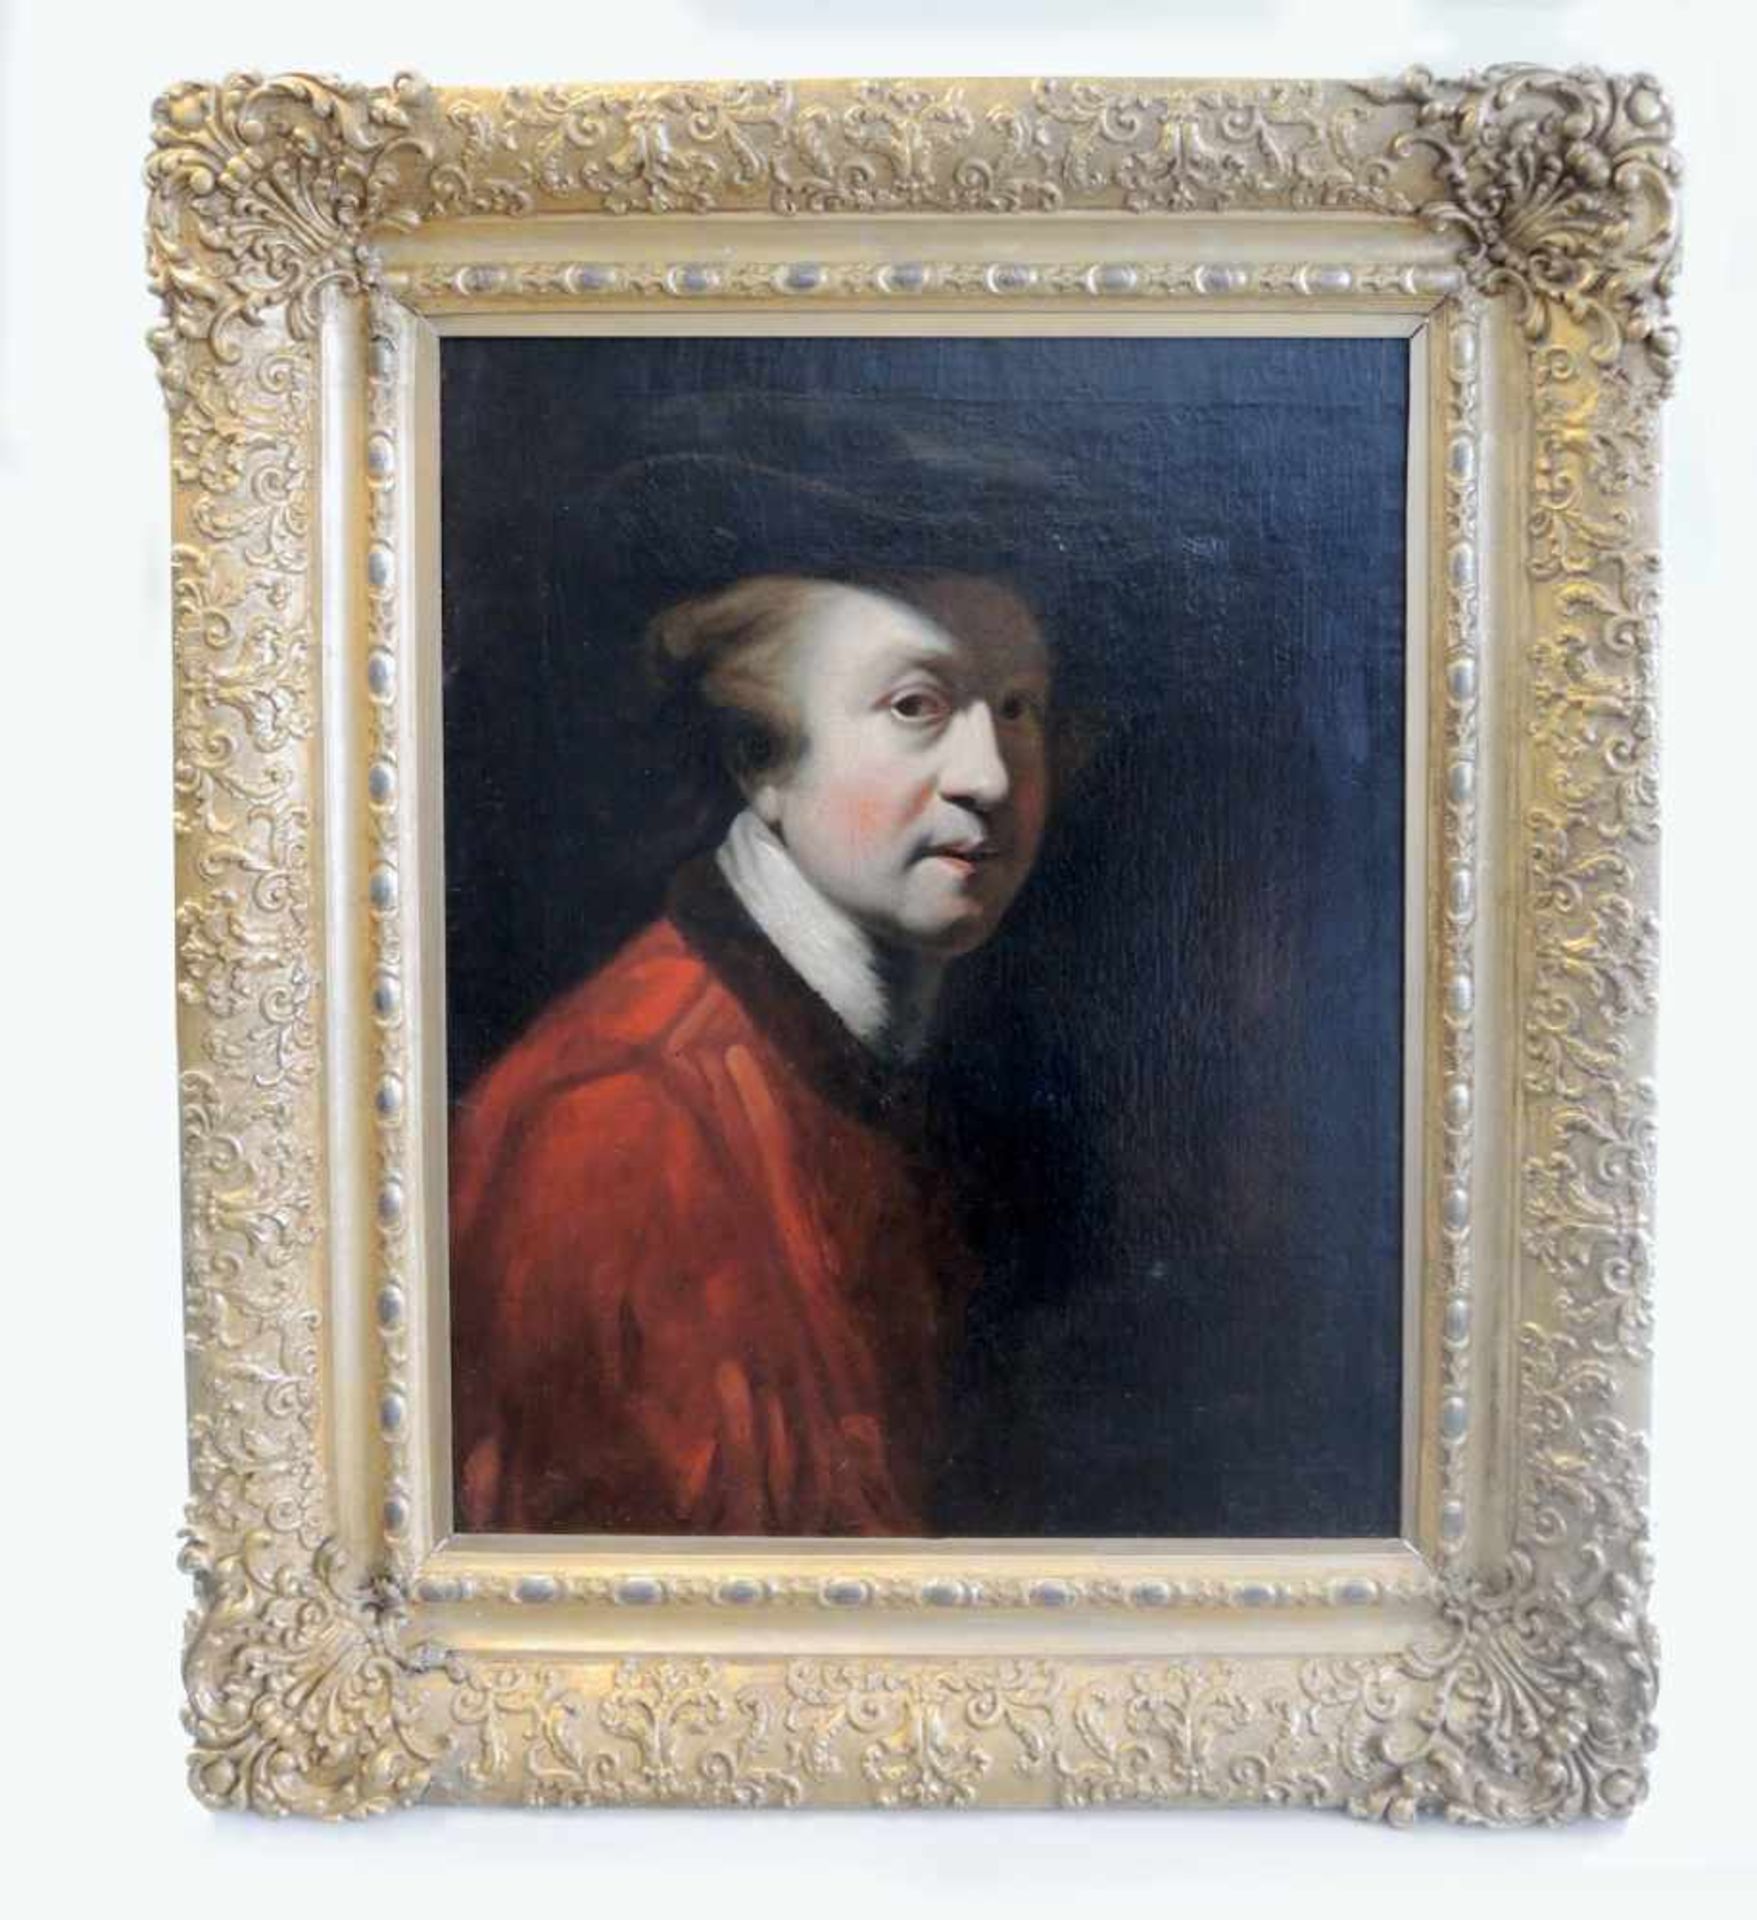 Porträt von Sir Joshua ReynoldsÖl/Leinwand. Teils doub., verso undeutlich beschriftet, wohl "A.M. - Bild 2 aus 2